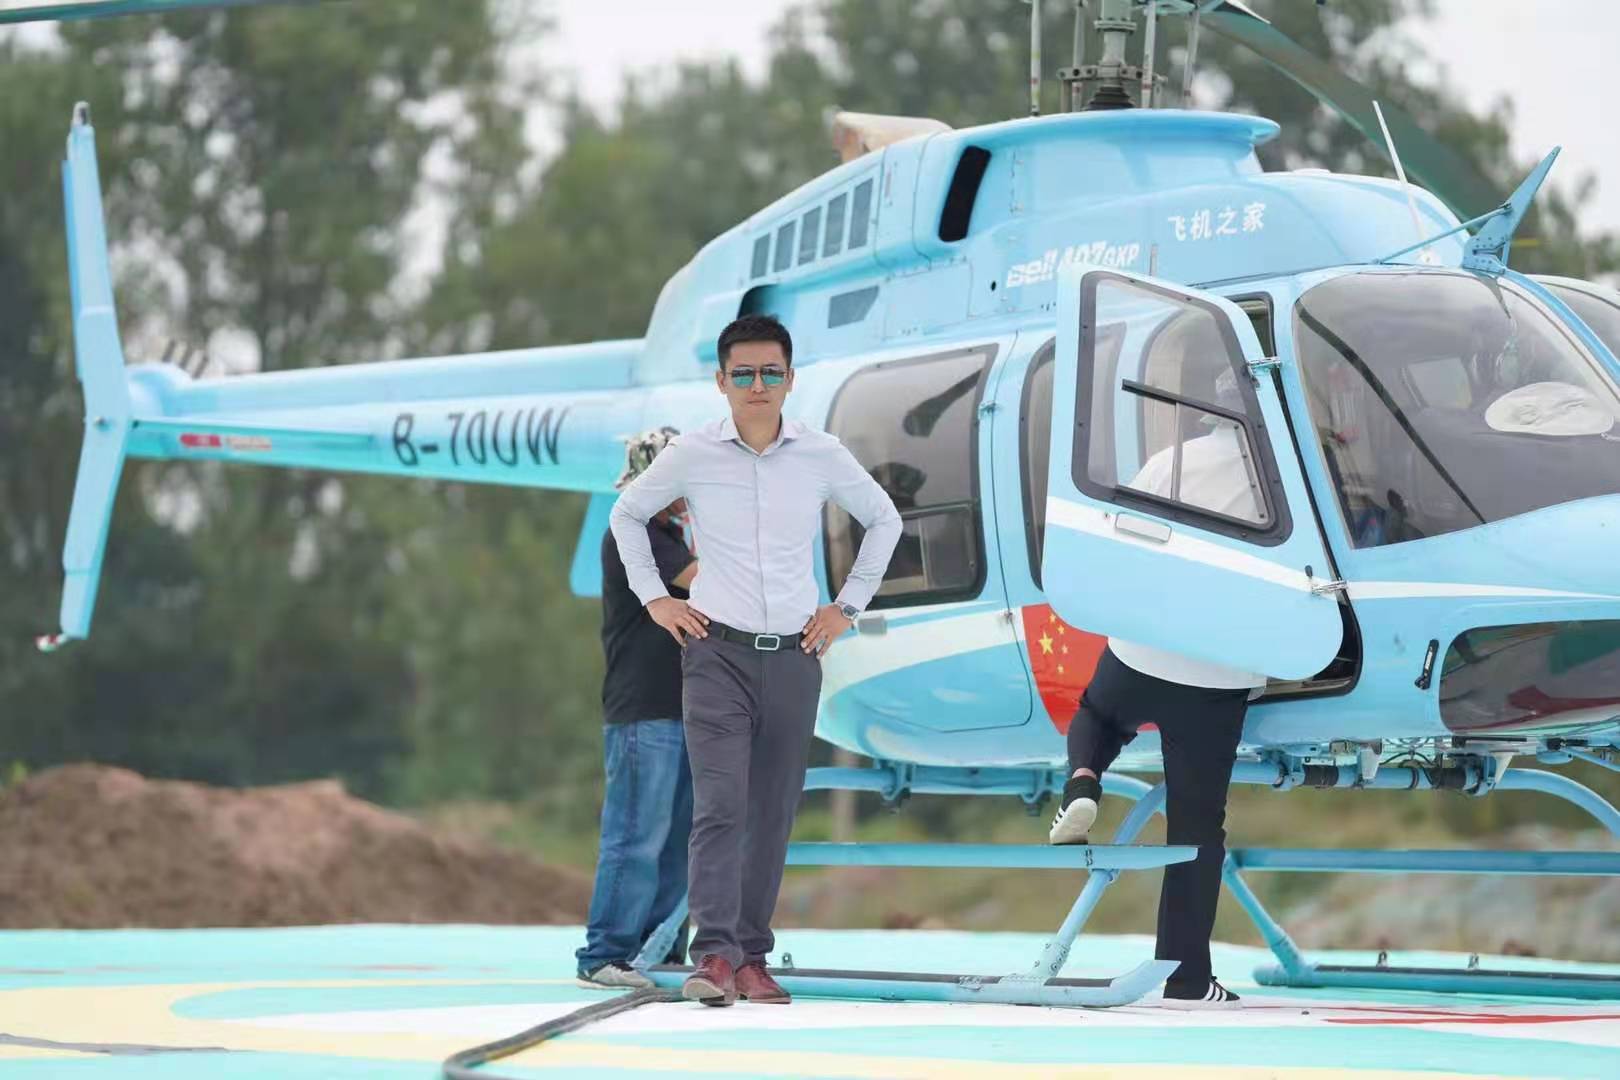 直升机婚礼  山东省内直升机婚礼优惠  直升机结婚  直升机接亲